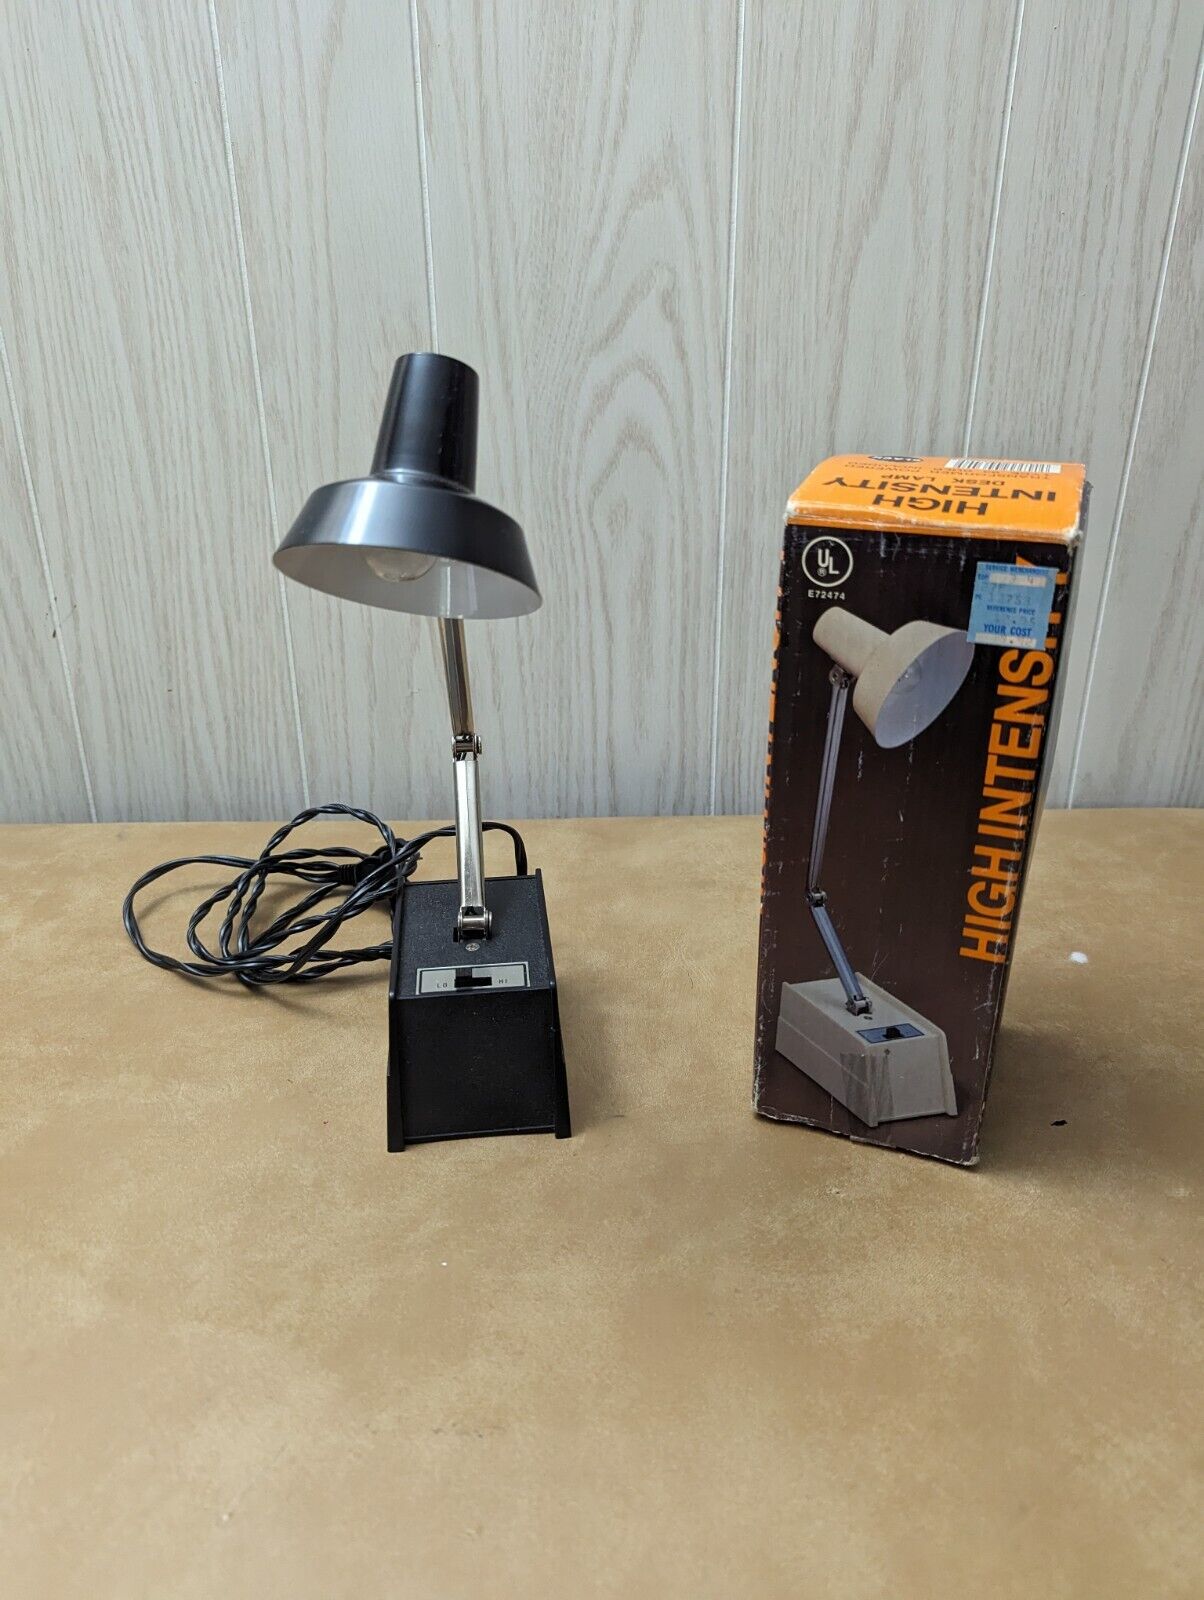 Vintage Retro Black Adjustable High Intensity Desk Lamp Light Lux-25 TESTED